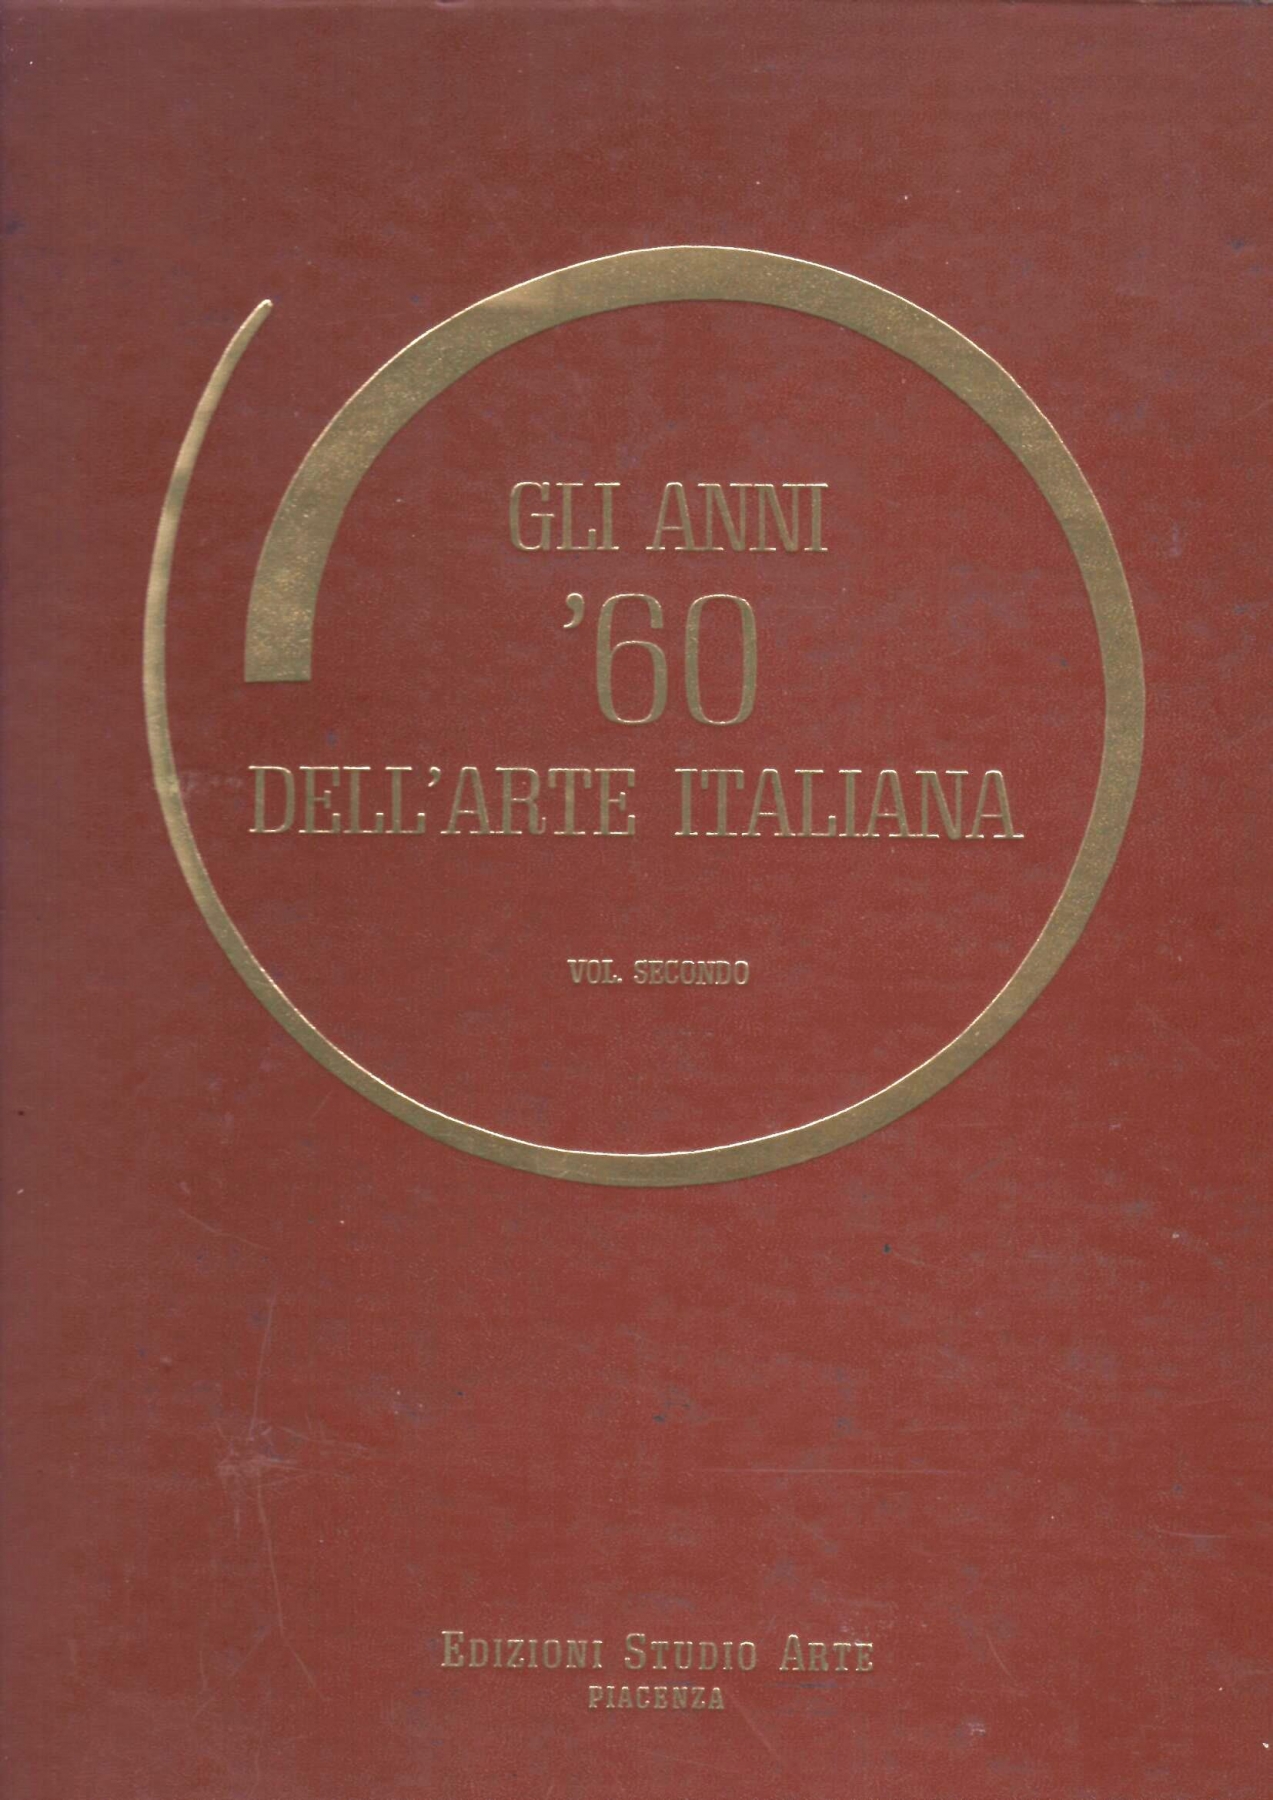  <b>Volume gli anni ’60 dell’Arte Italiana del 1967, pag. 45 </b> - Pubblicazione dipinto di Amleto Bertrand 'Focalizzazione di un'idea'